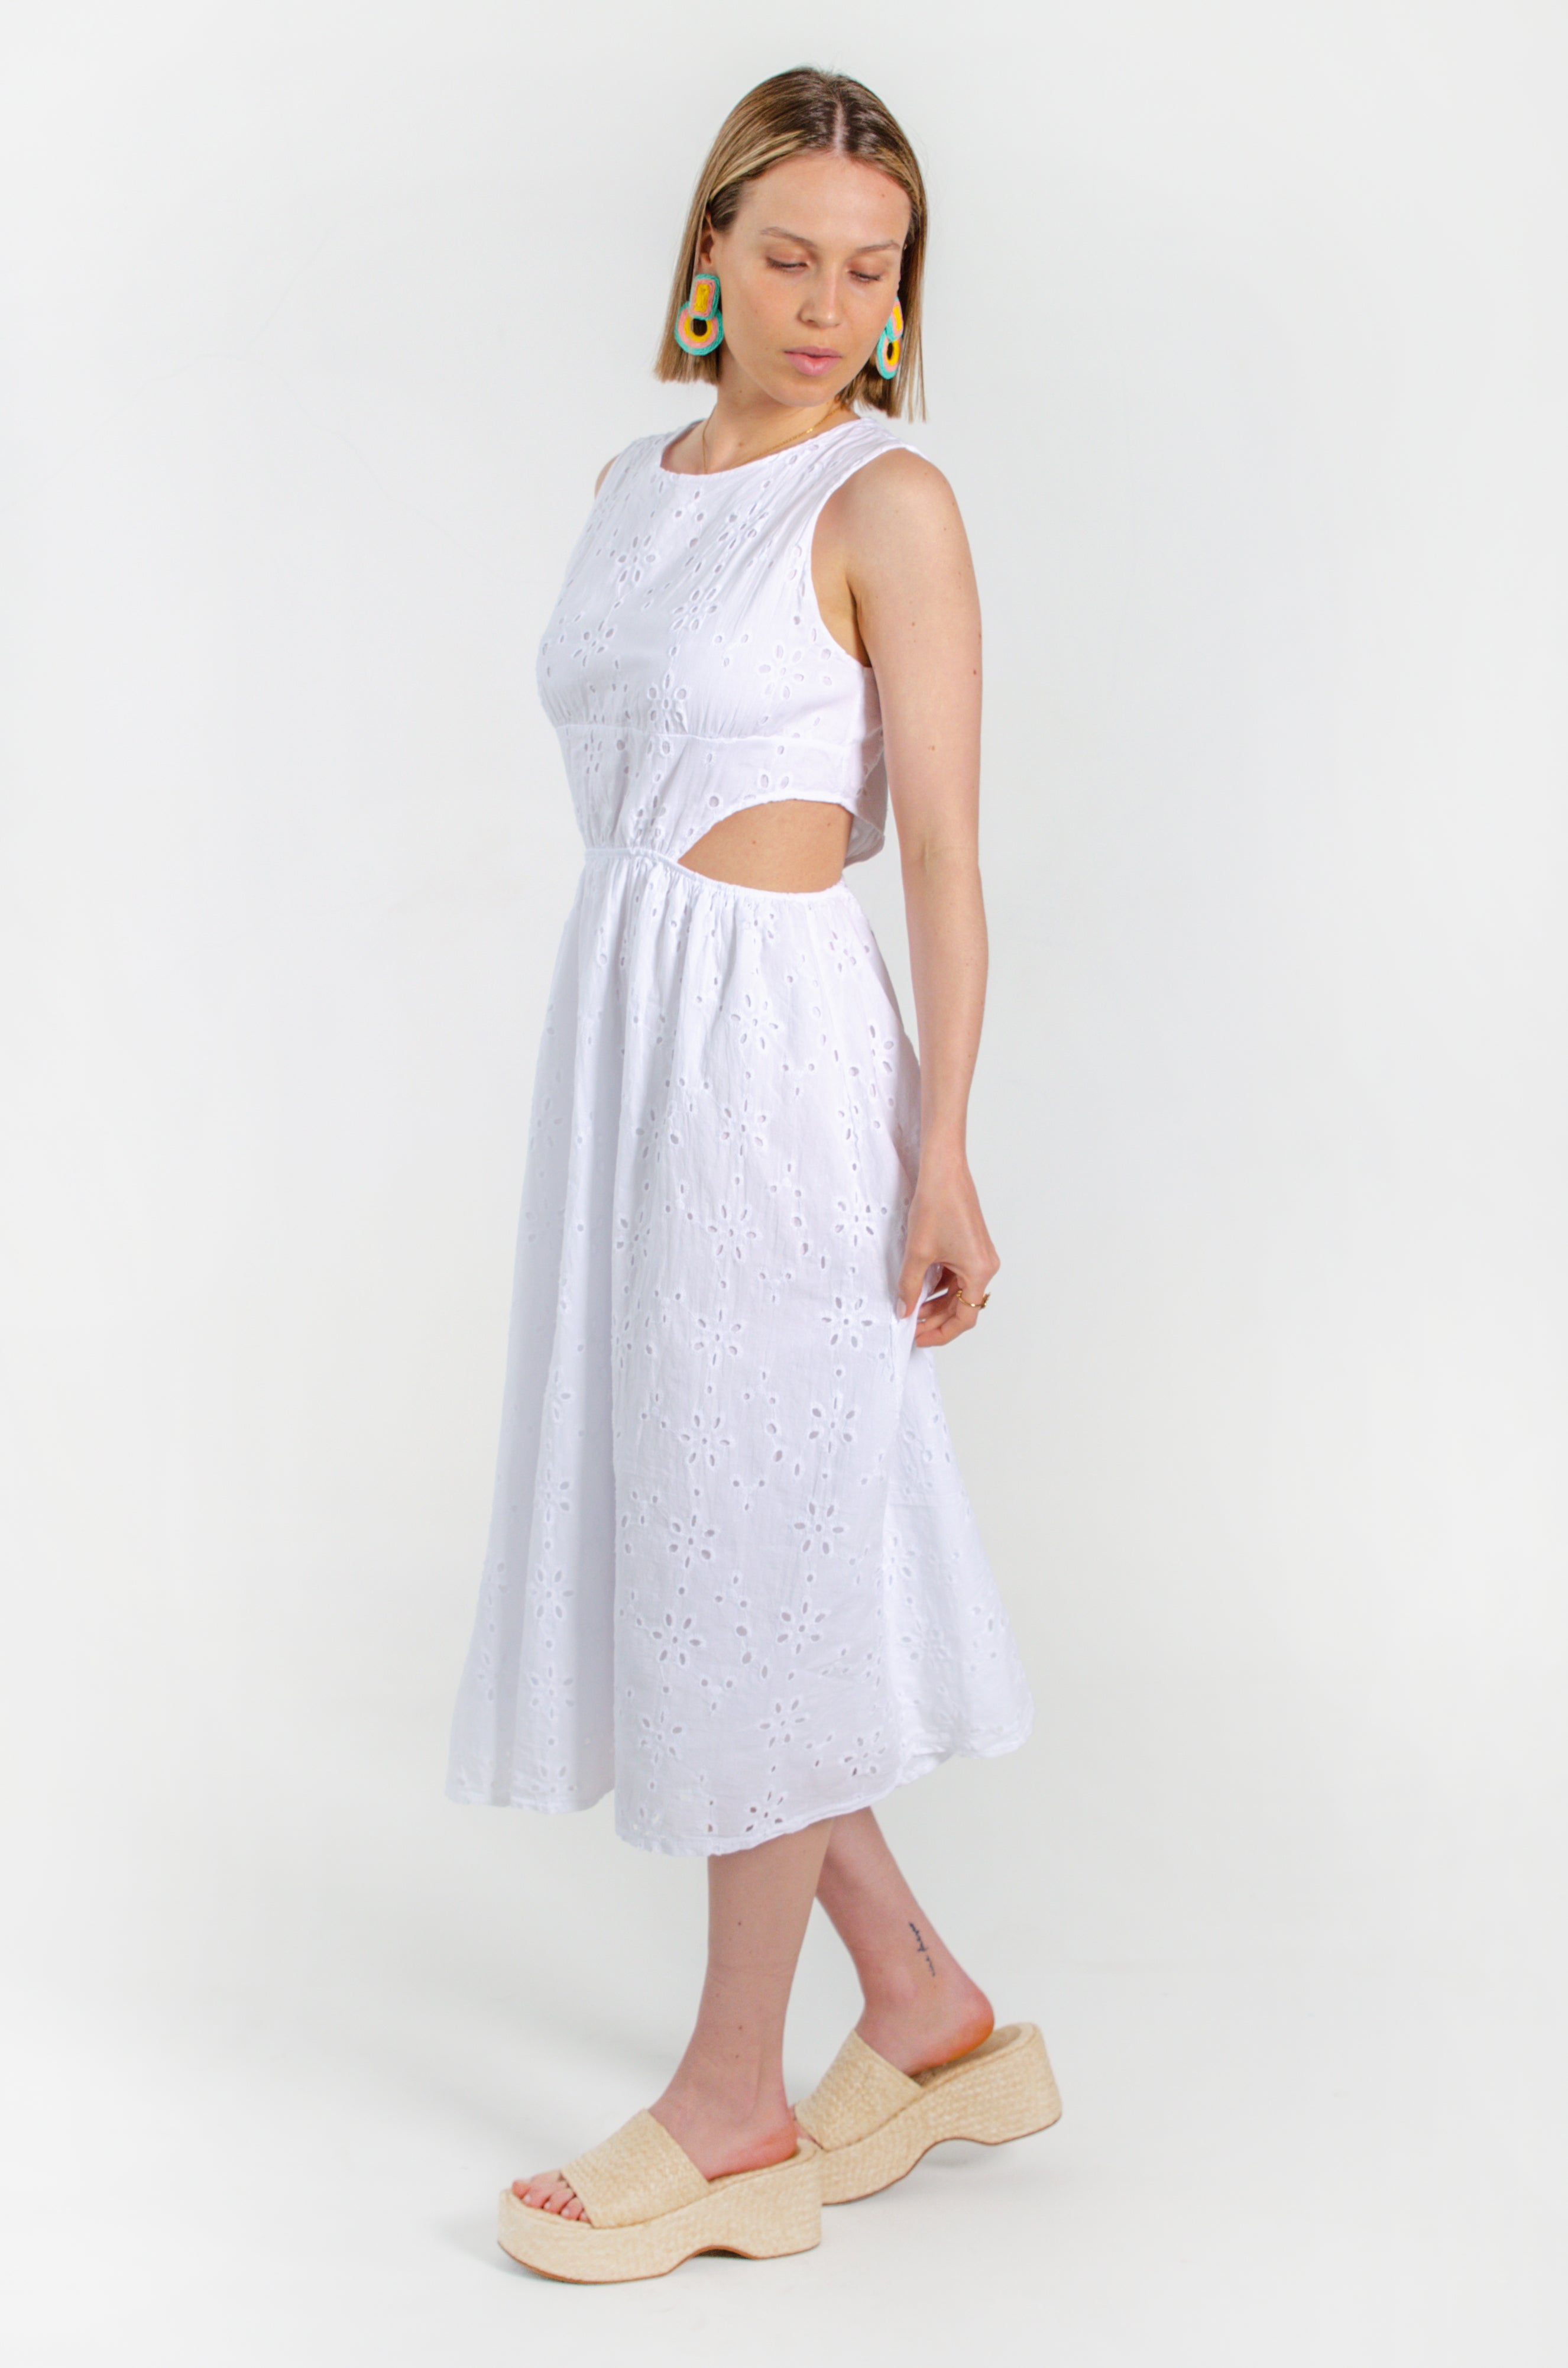 APRIL DRESS // WHITE